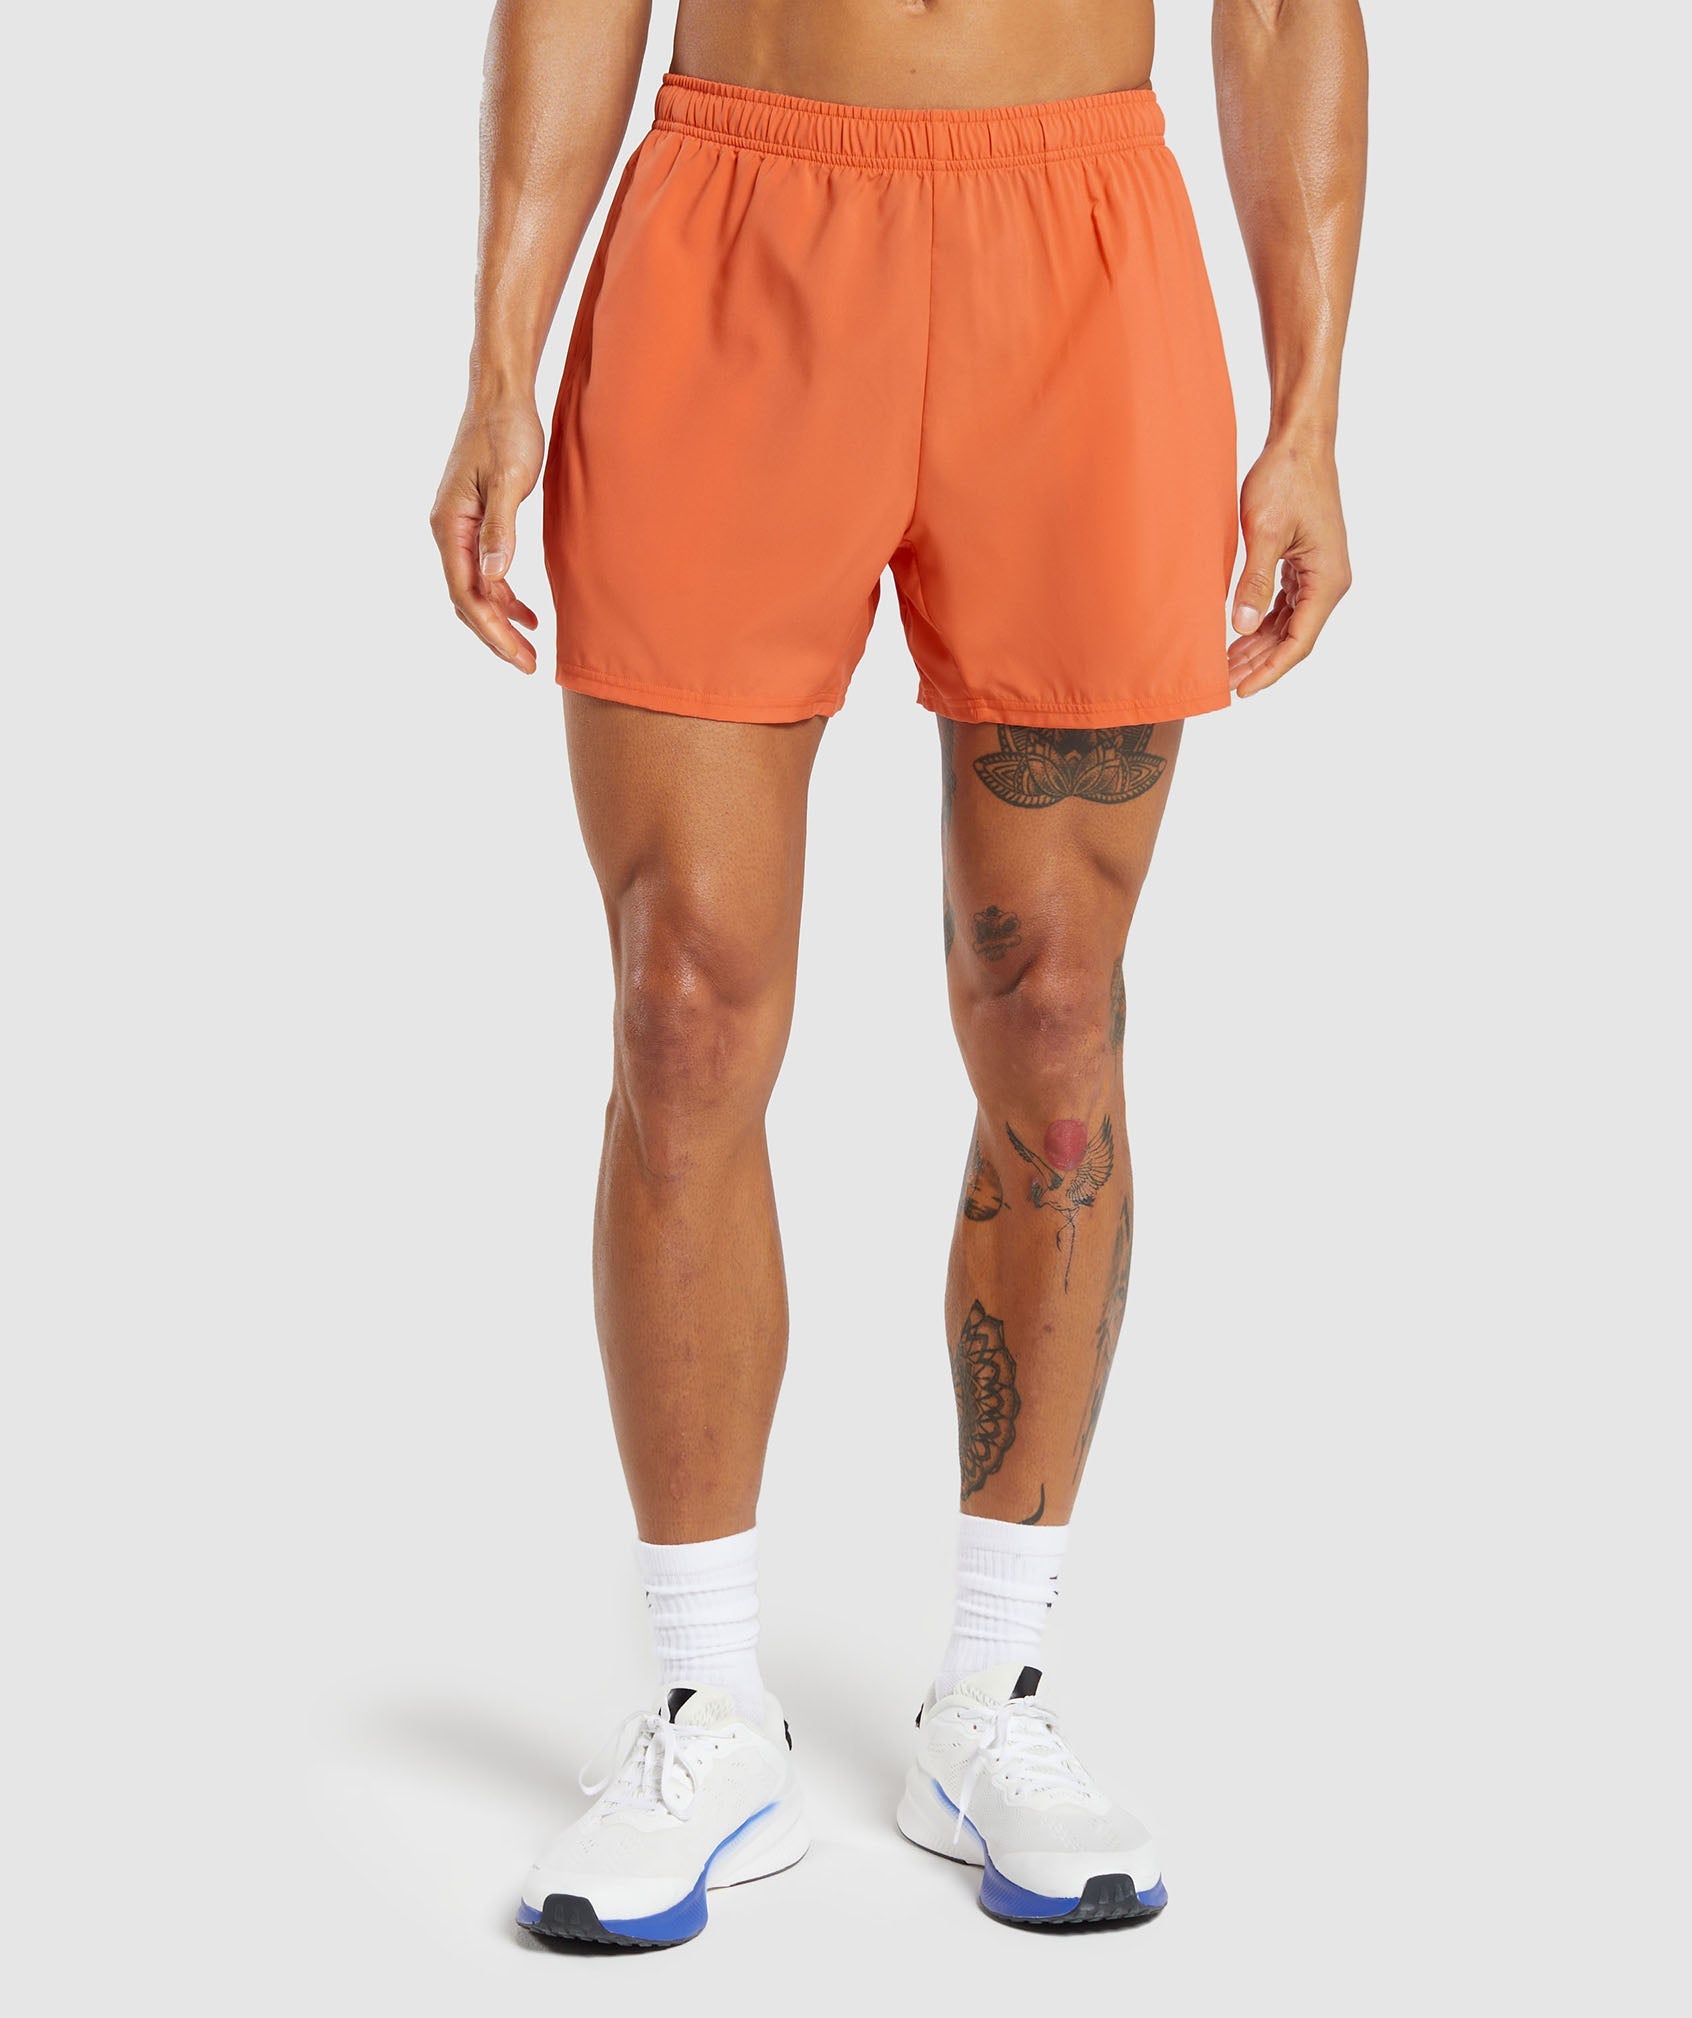 Arrival 5" Shorts in Ignite Orange